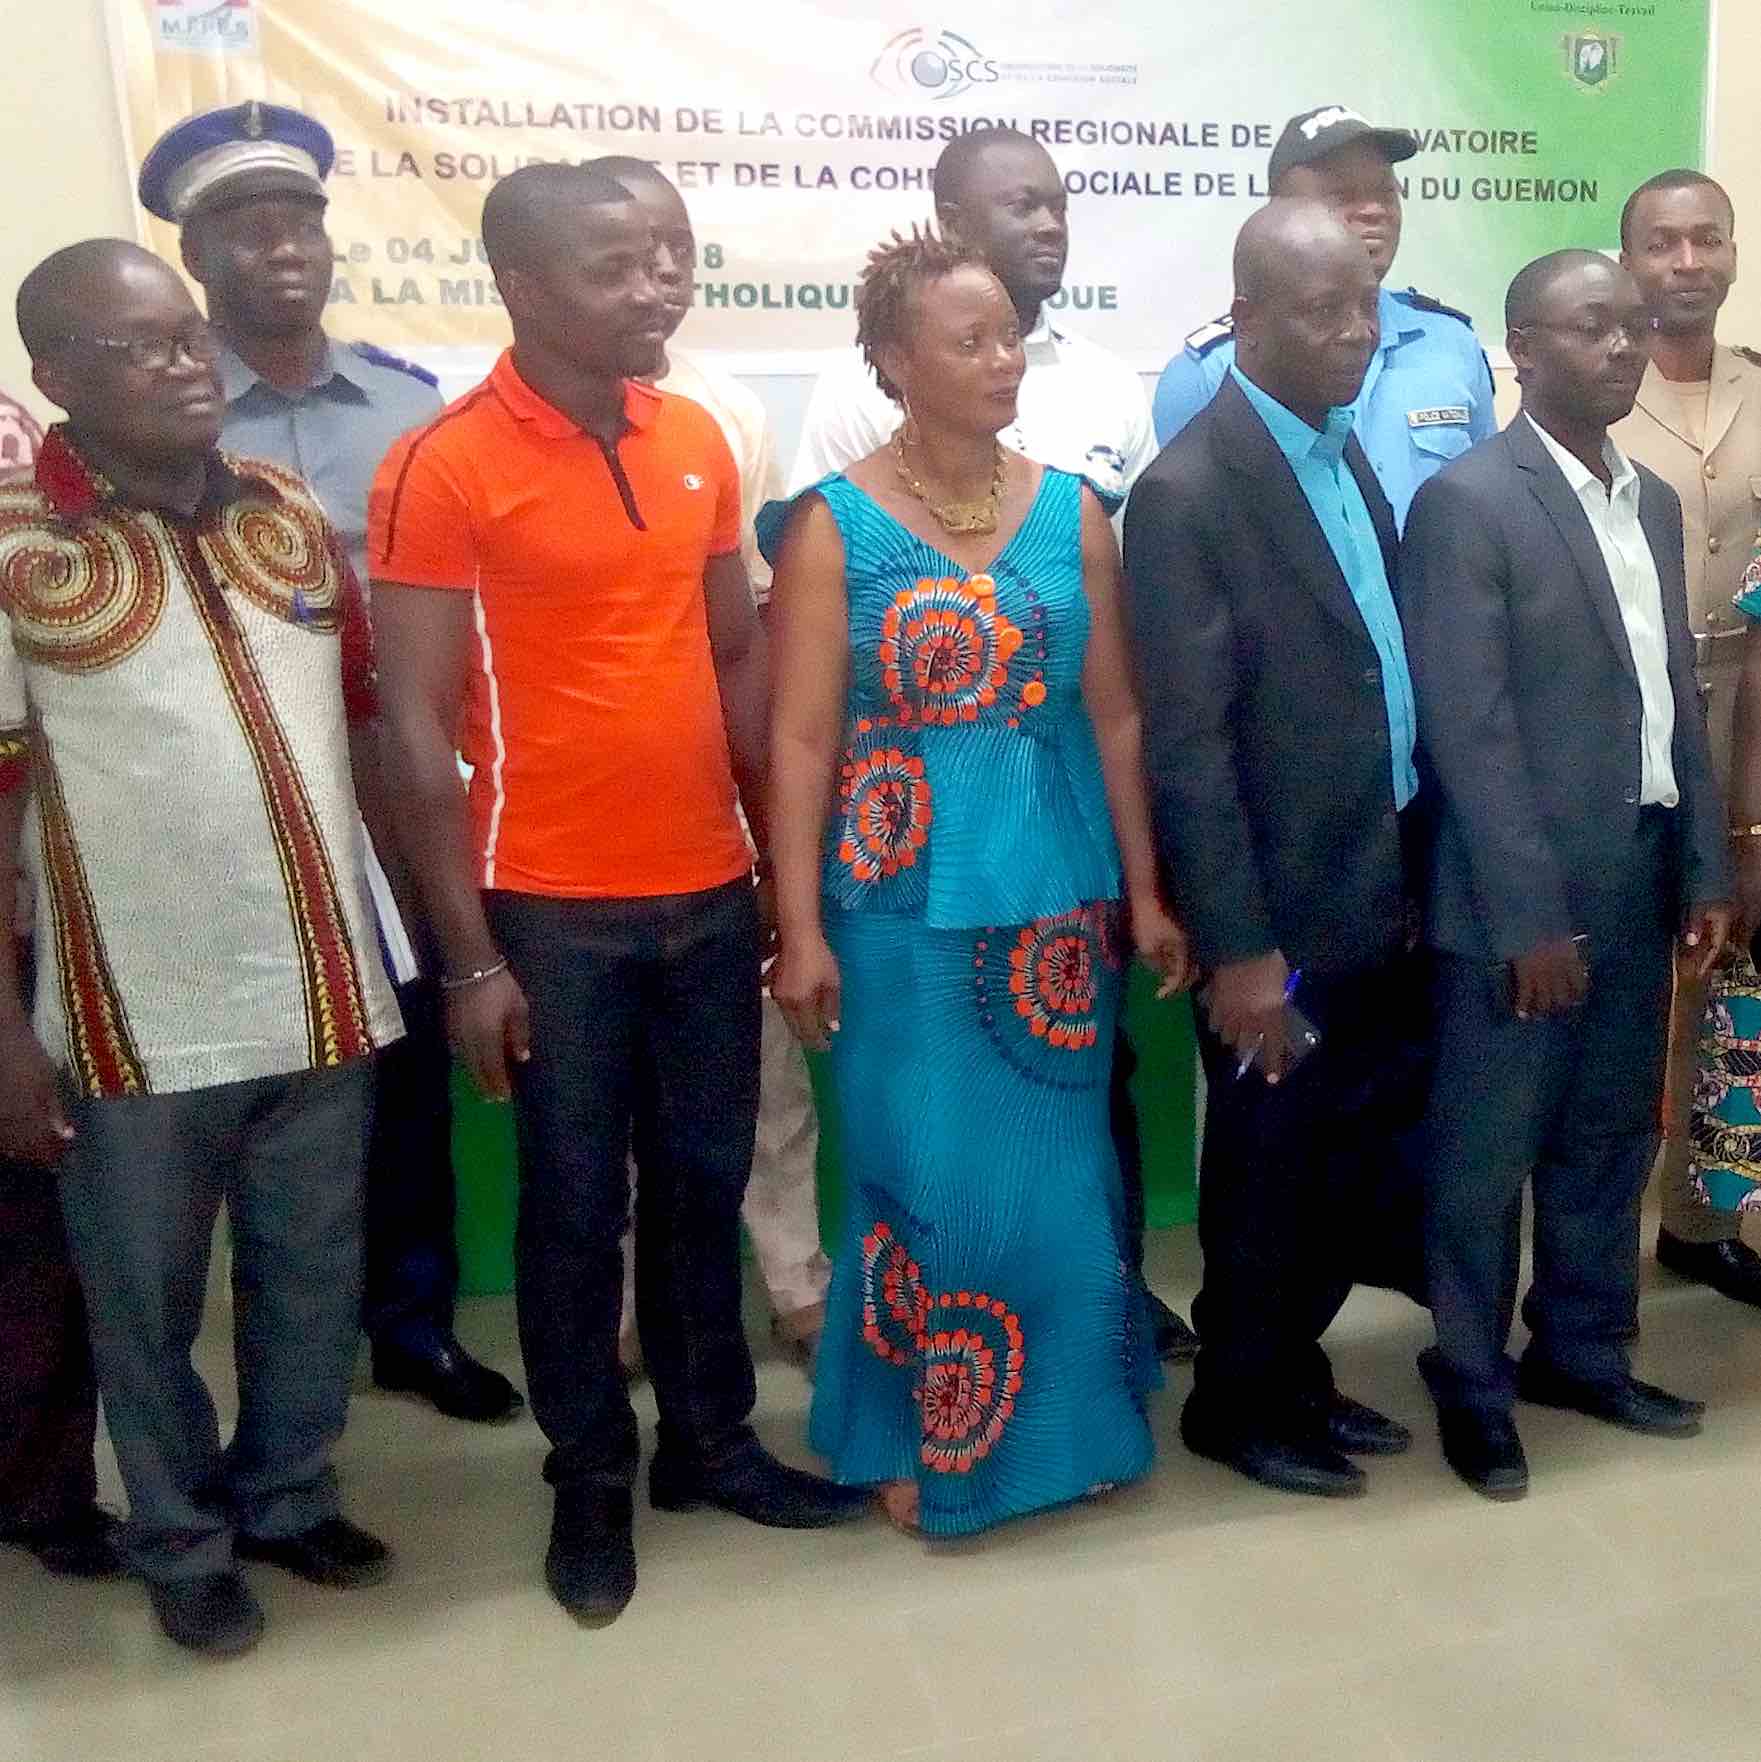 Guemon/ Les membres de la Commission régionale de l'Observatoire de la Solidarité et de la Cohésion sociale ( OSCS) installés